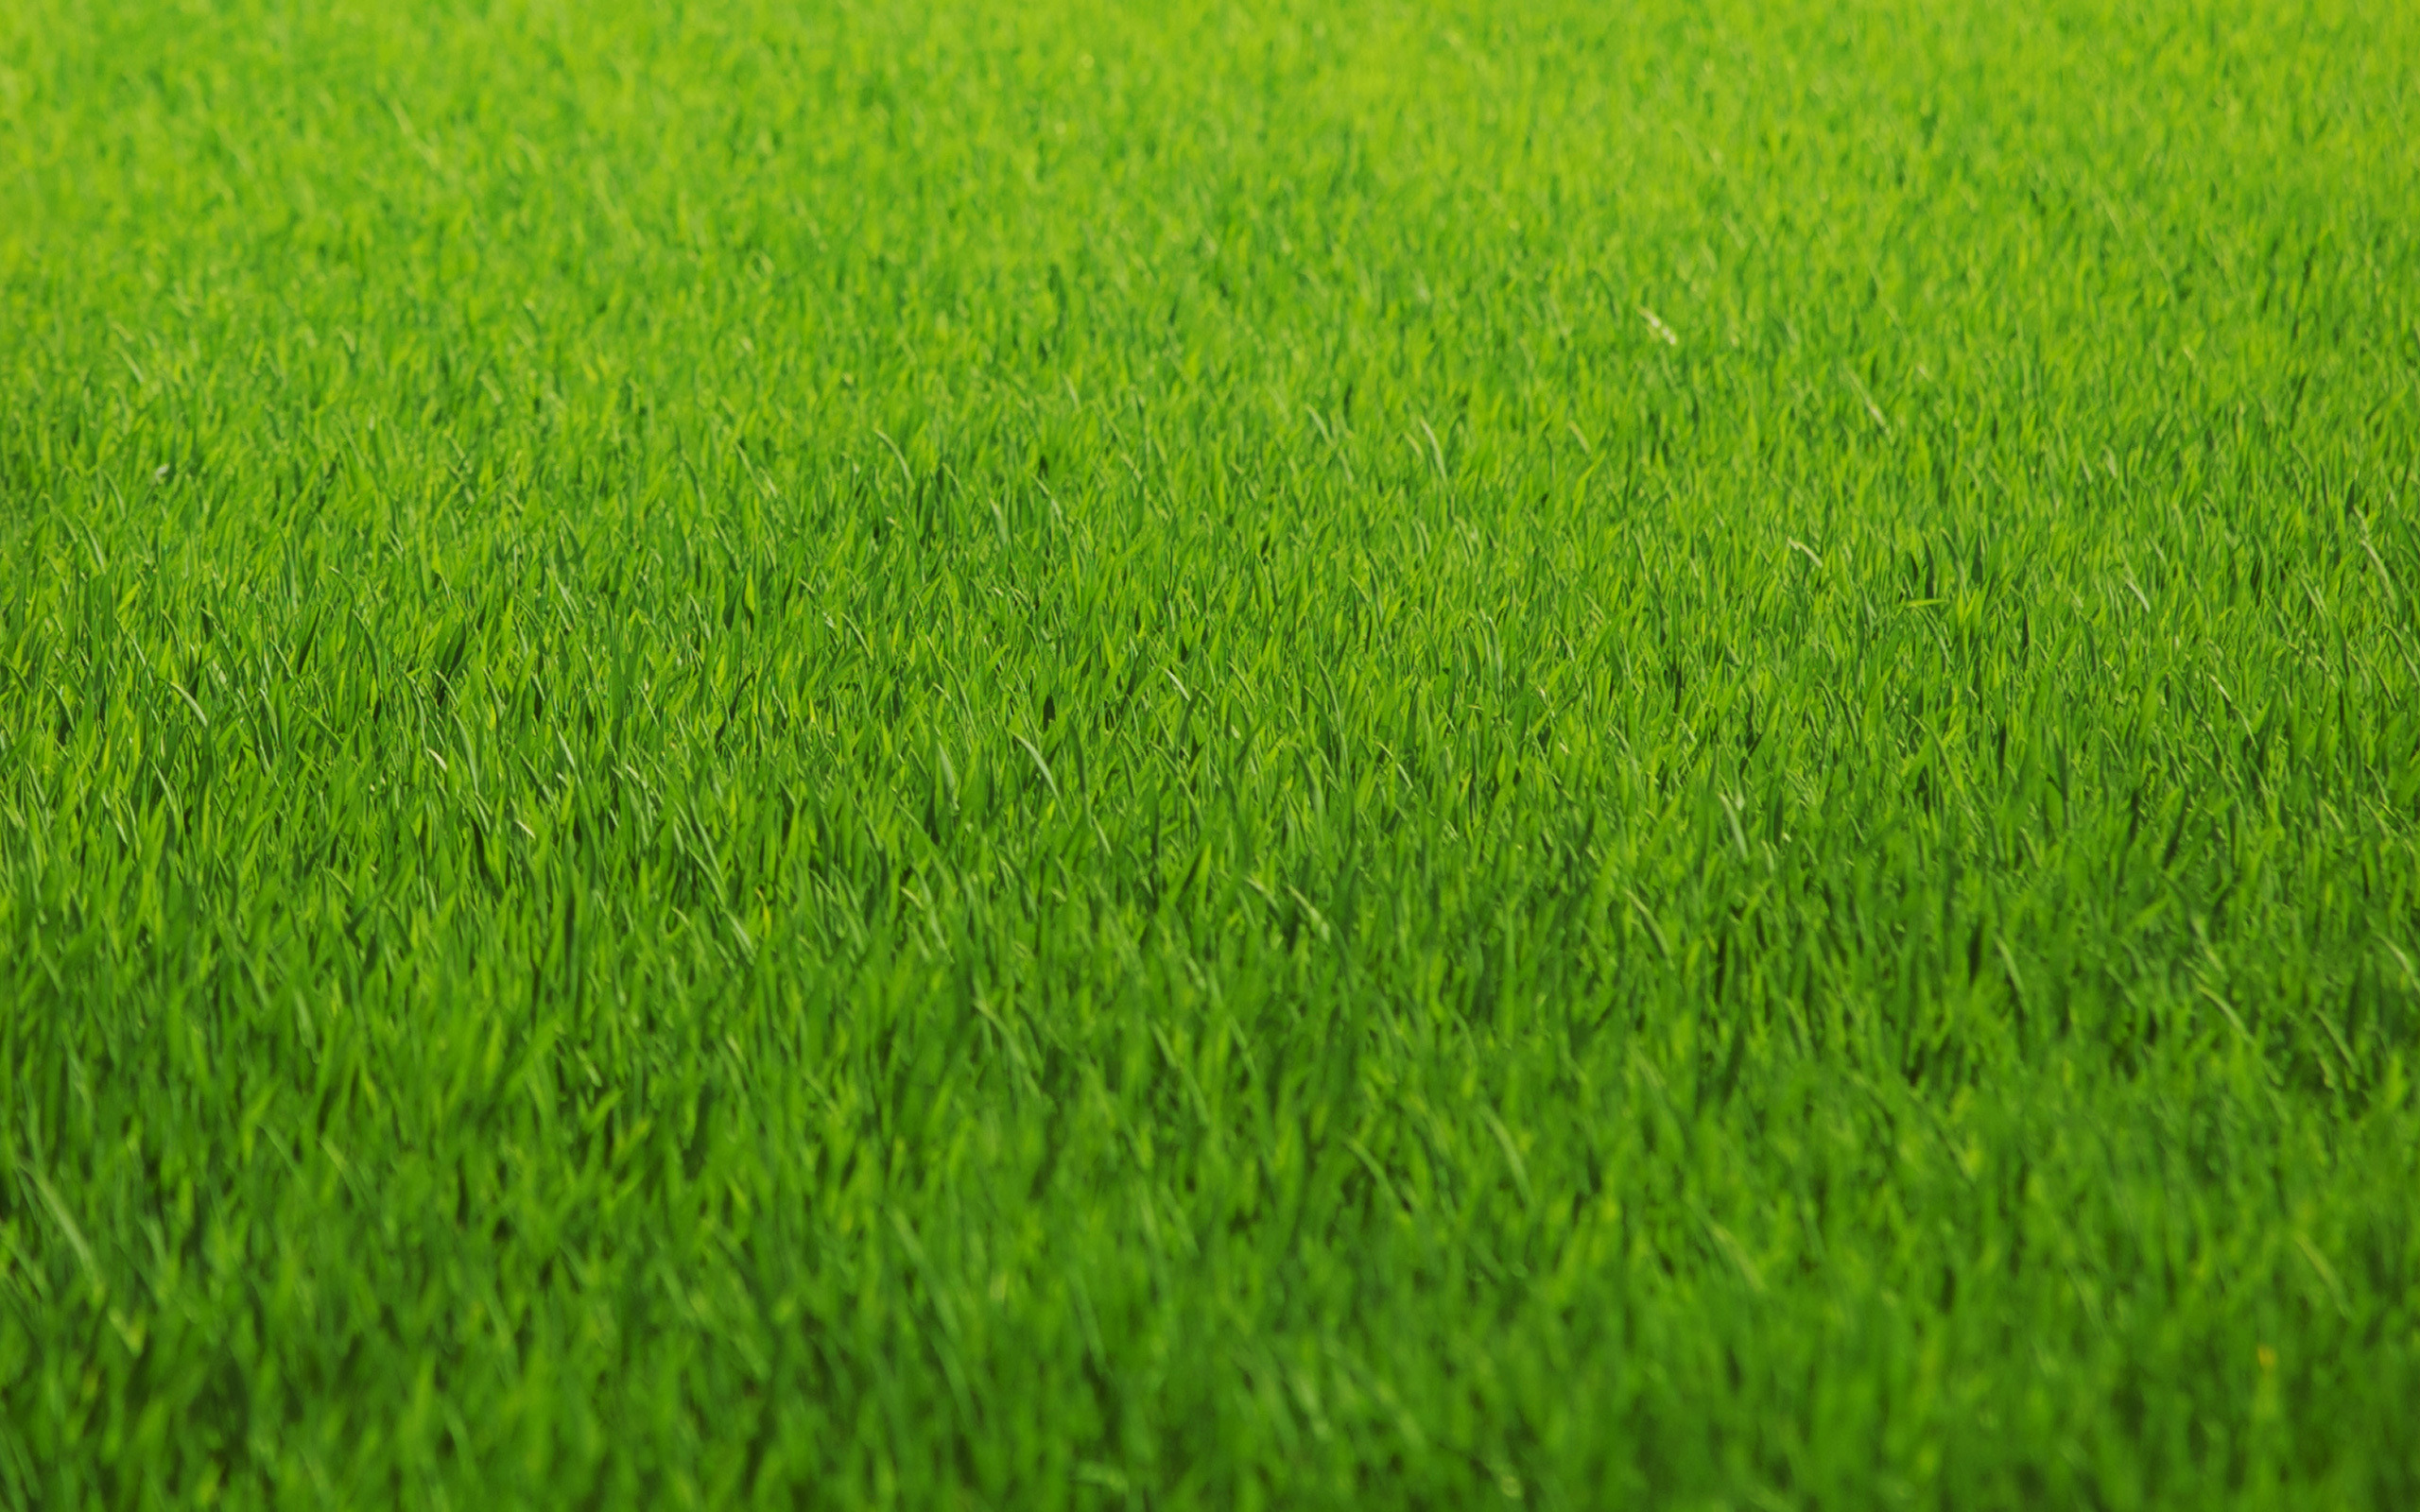  green grass background texture download photo green grass texture